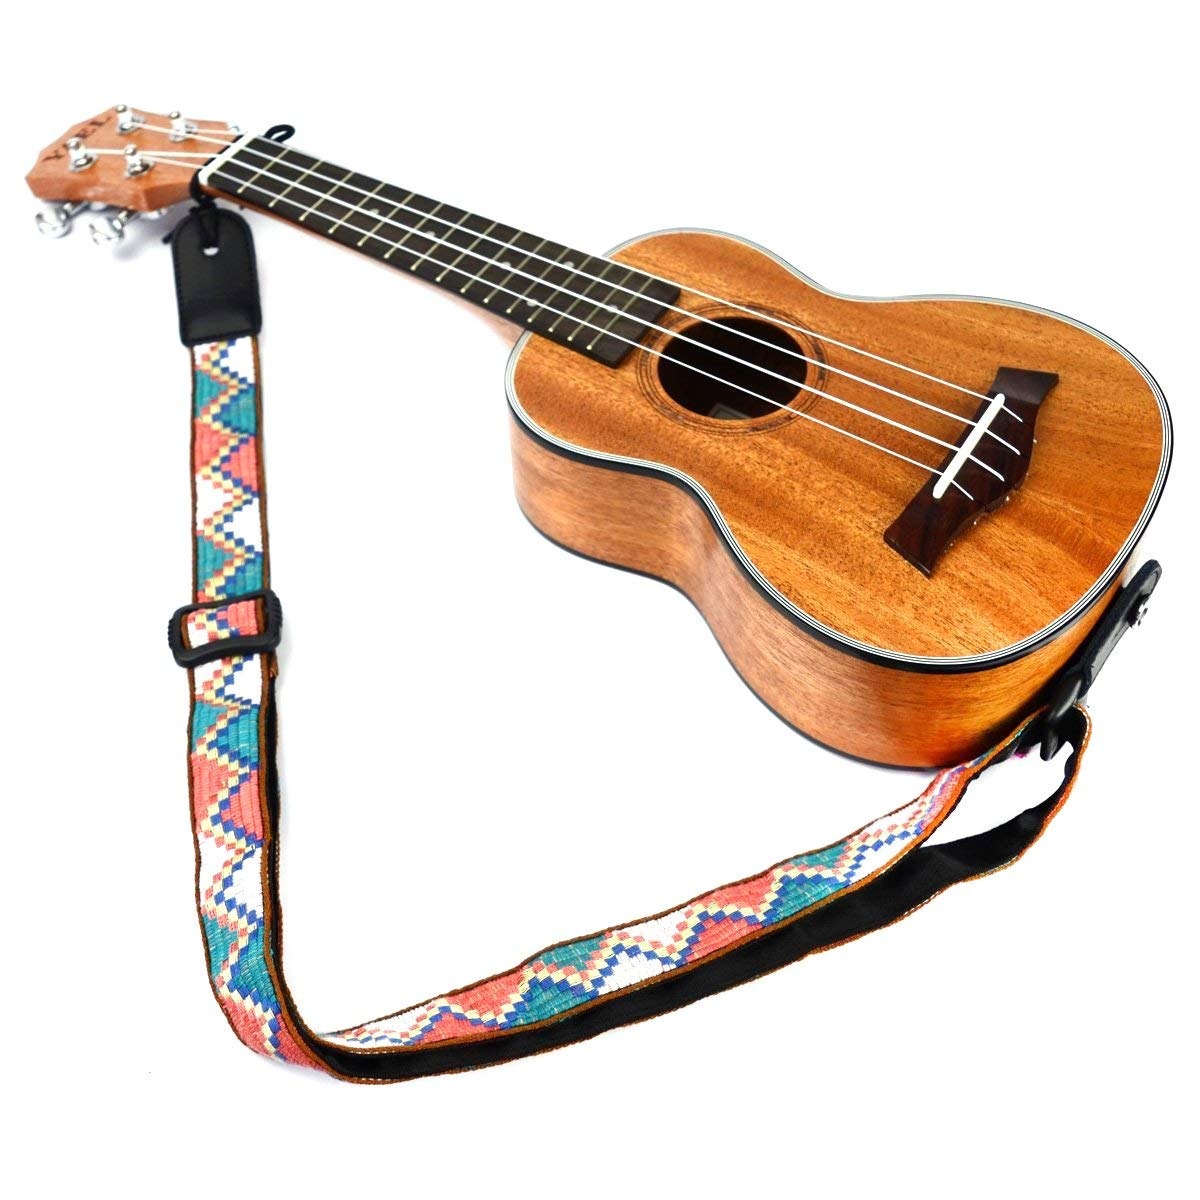 Correa de ukelele correa de guitarra de 4 cuerdas guitarra de cuero artificial para adultos ajustable suave suave para niños adultos entusiasta de la música principiante blue